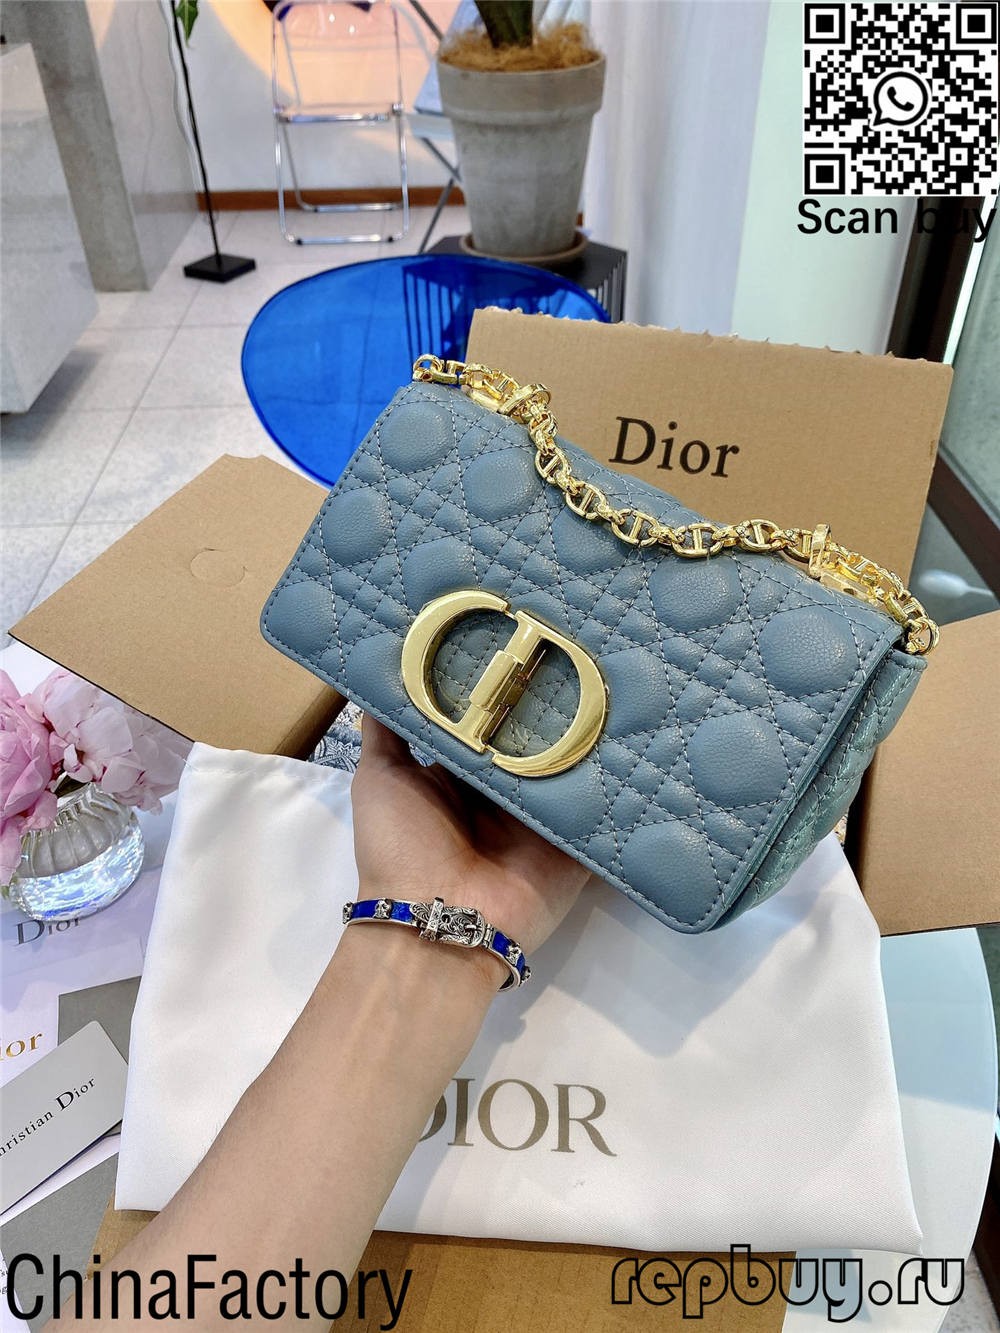 Dior มูลค่าการซื้อกระเป๋าจำลอง 12 ใบ (อัปเดต 2022) - ร้านค้าออนไลน์กระเป๋าปลอม Louis Vuitton คุณภาพดีที่สุด, กระเป๋าออกแบบแบบจำลอง ru